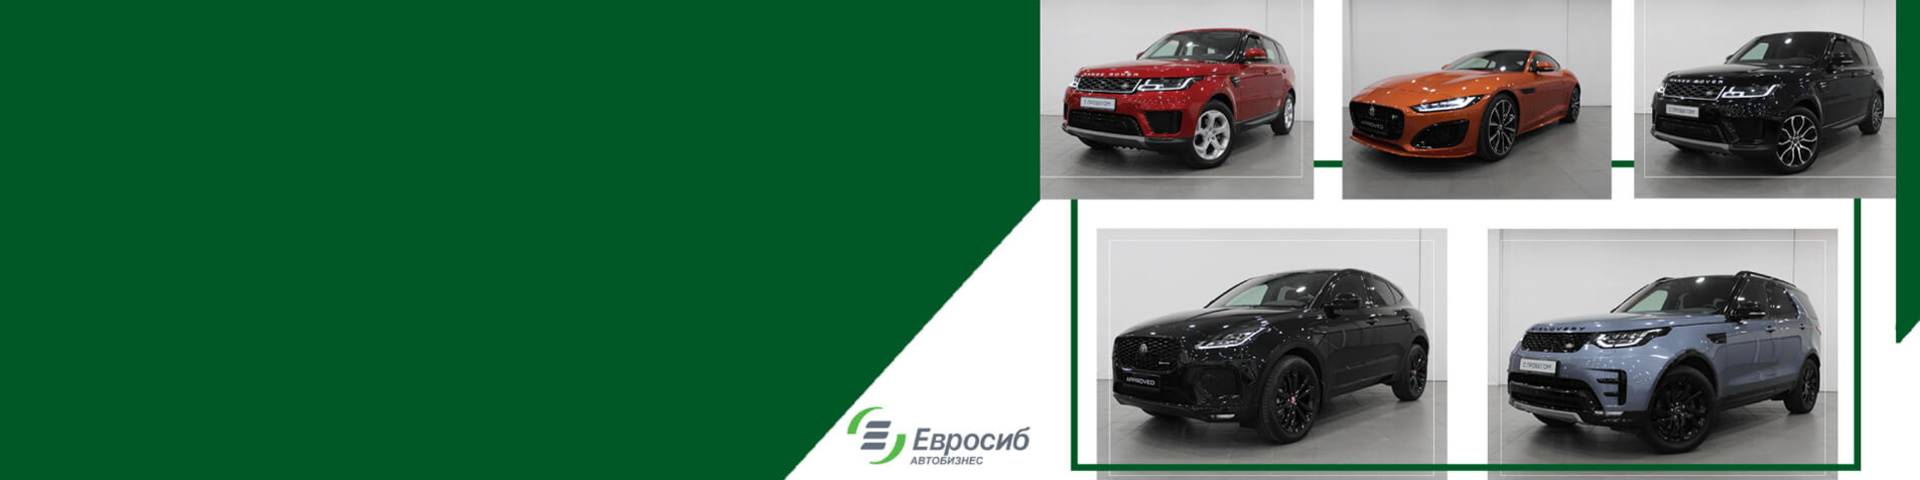 Привезём на заказ любой автомобиль из США/Европы/СНГ в Санкт-Петербург для вас!